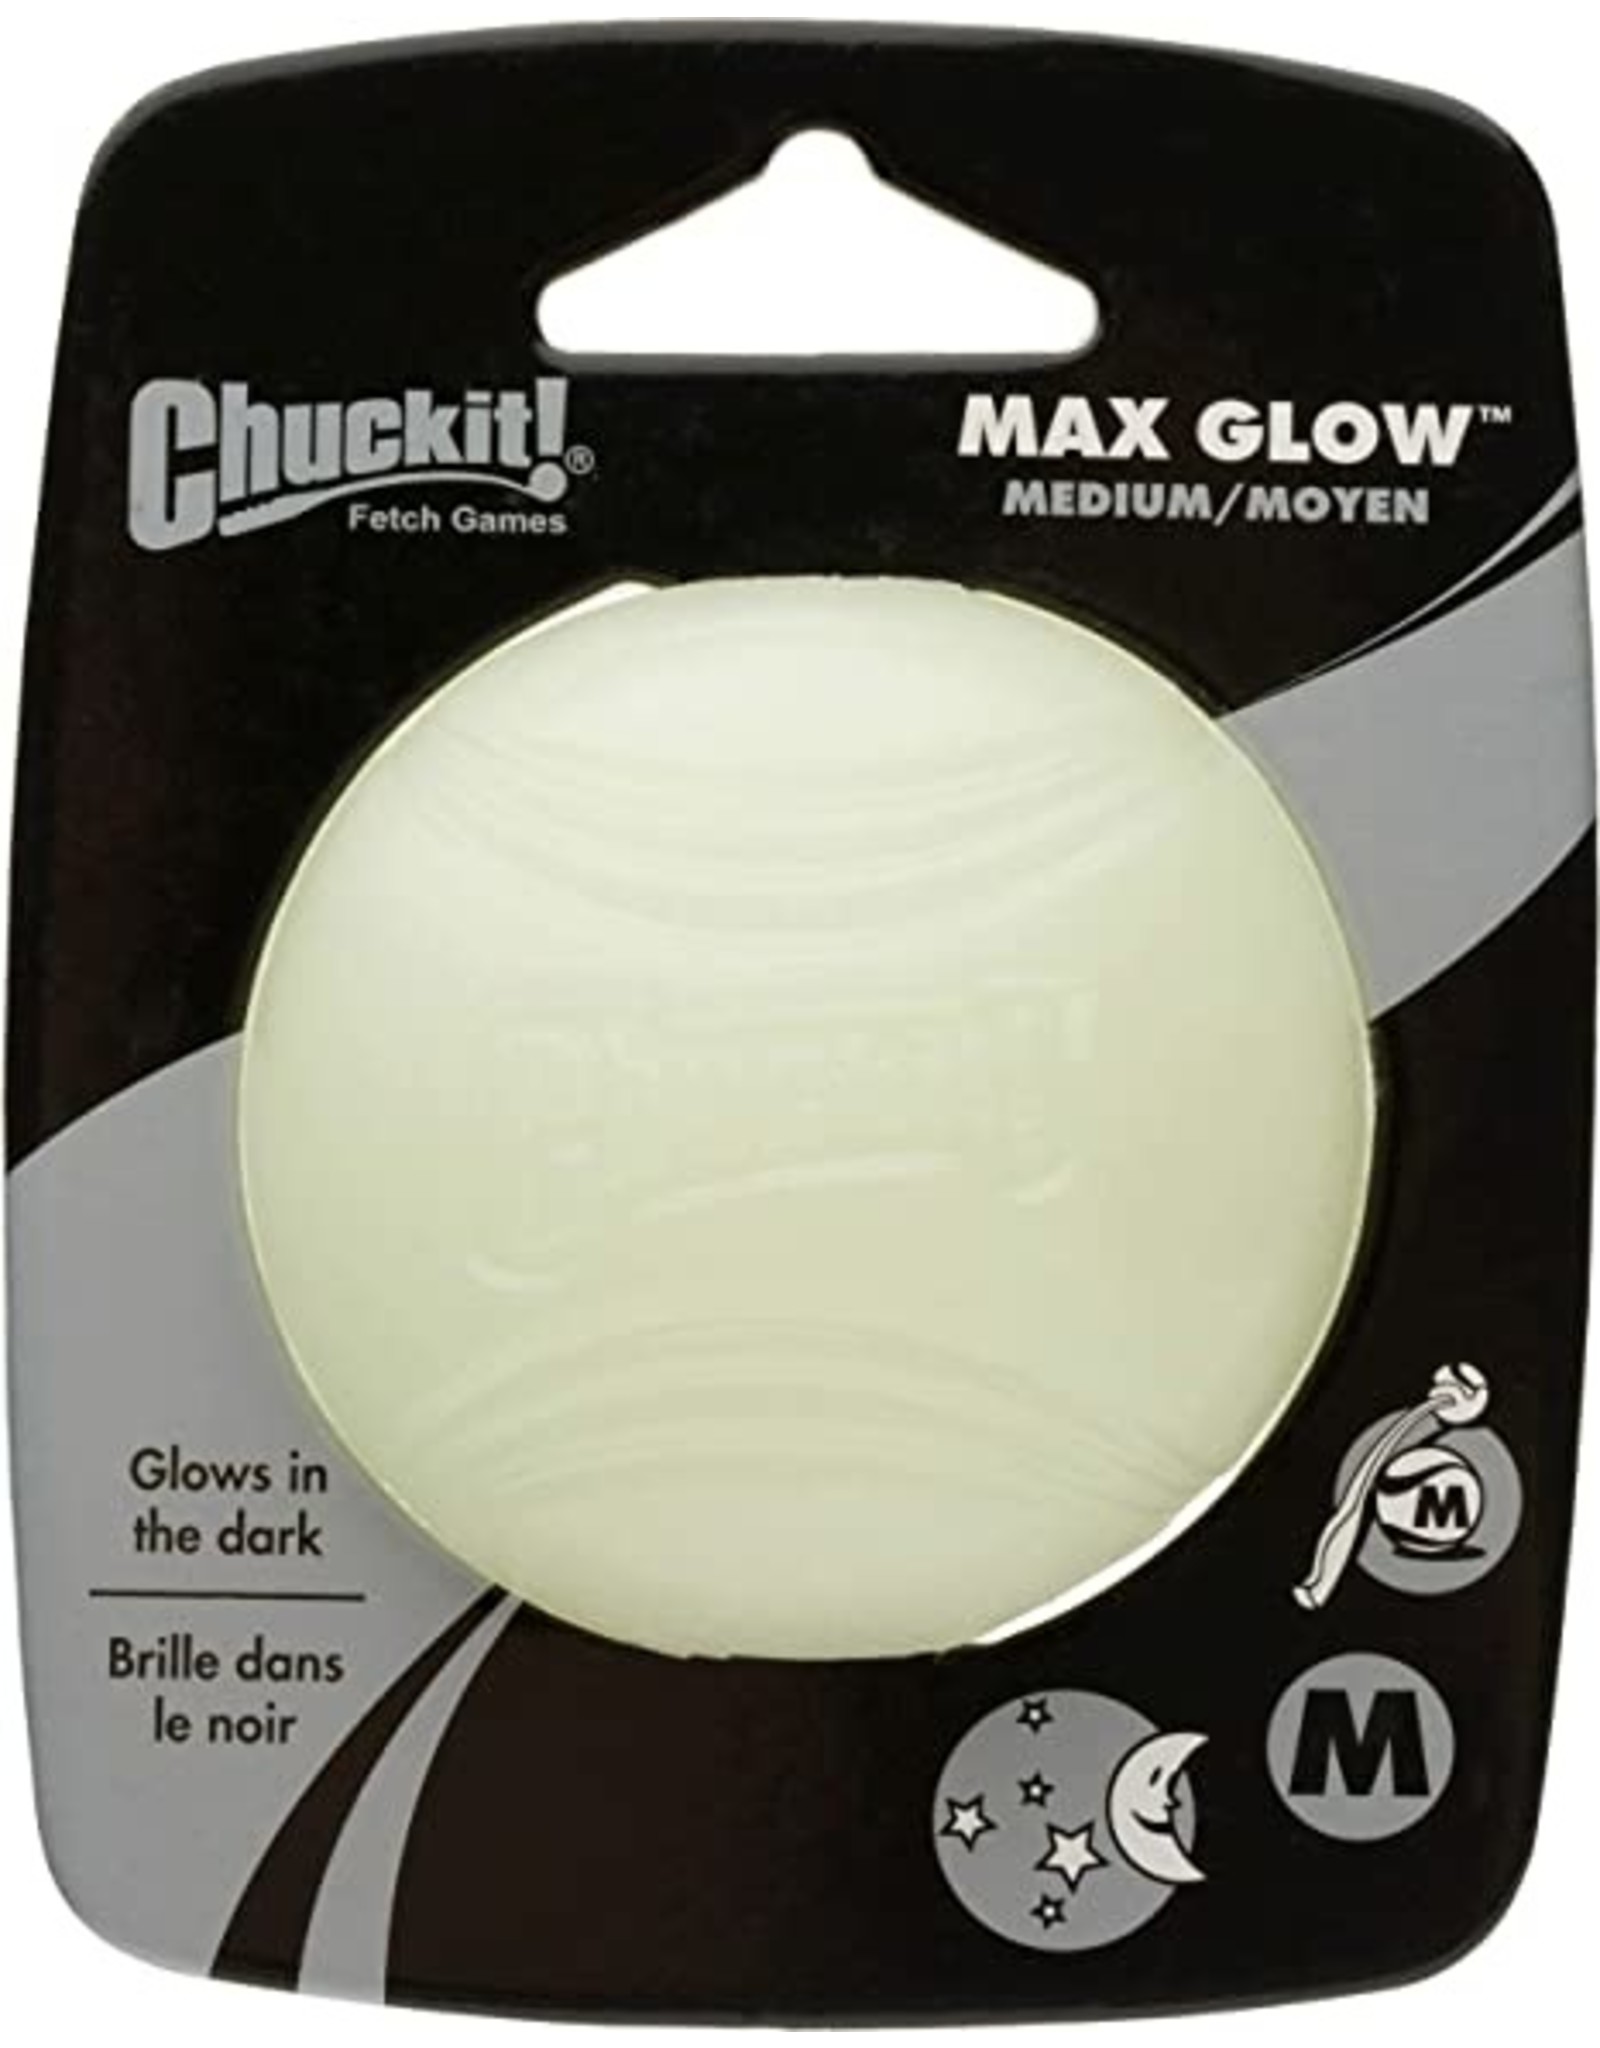 Chuck it Chuck It Max Glow Medium